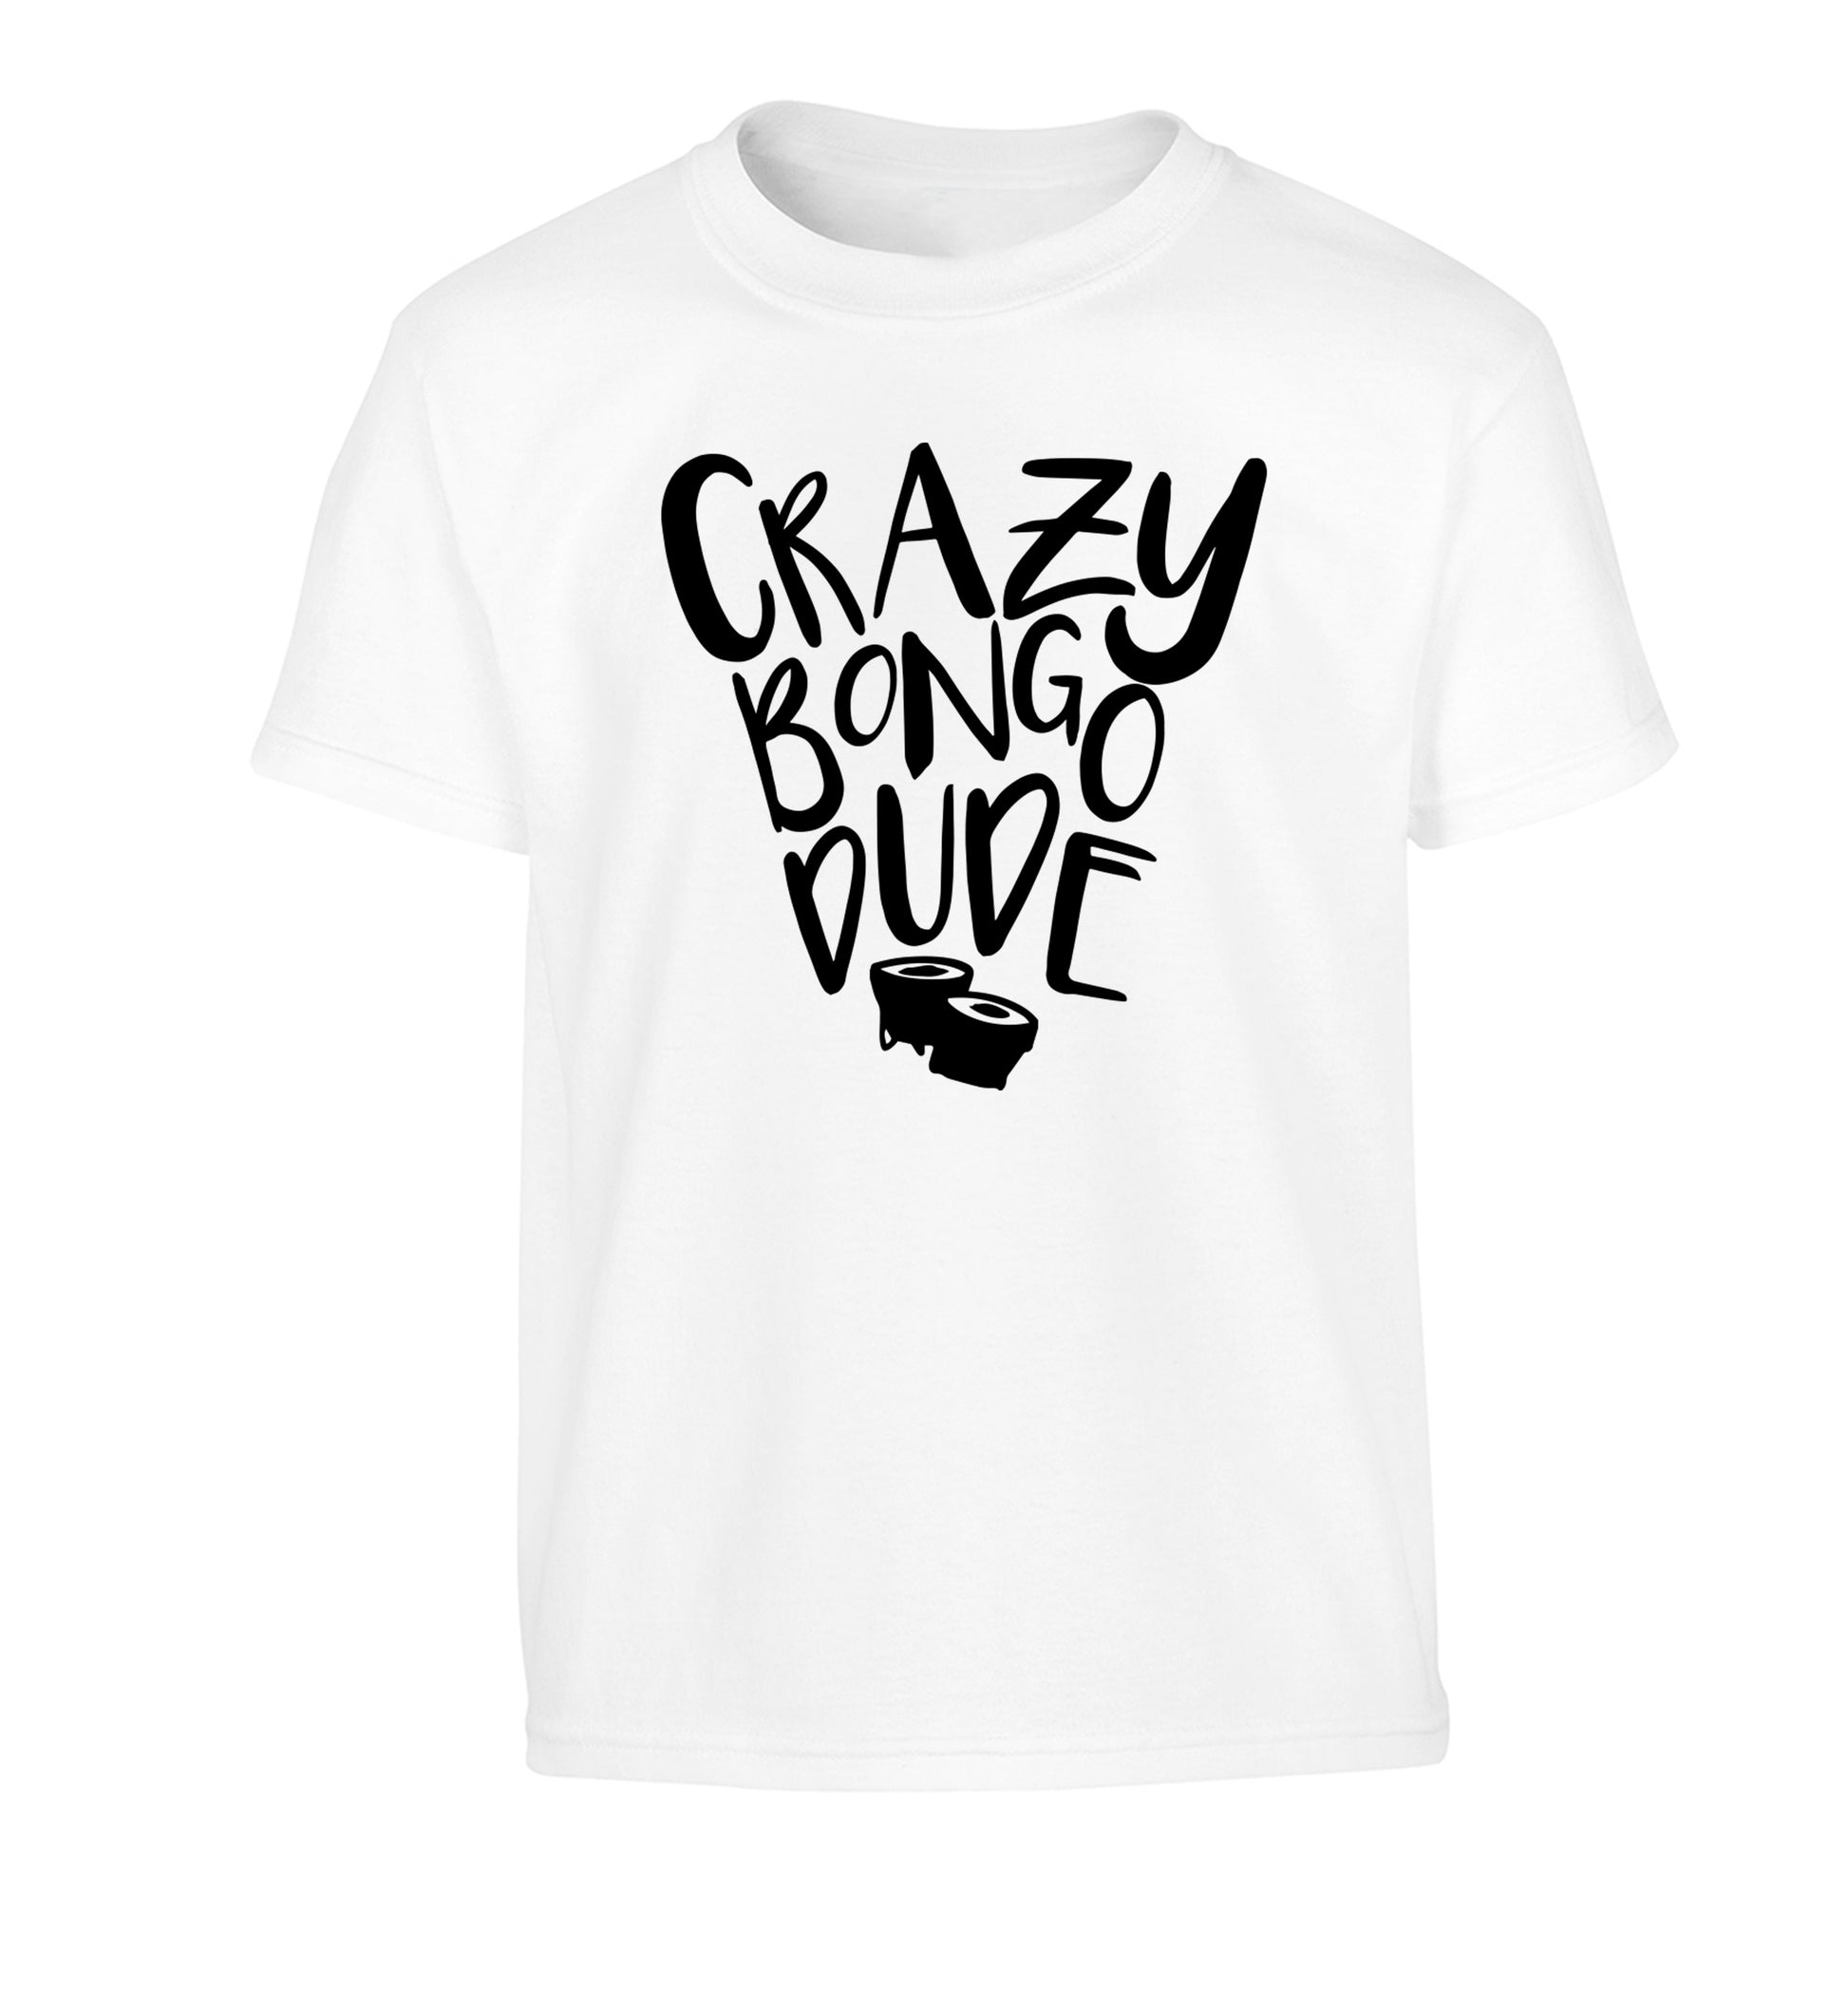 Crazy bongo dude Children's white Tshirt 12-14 Years